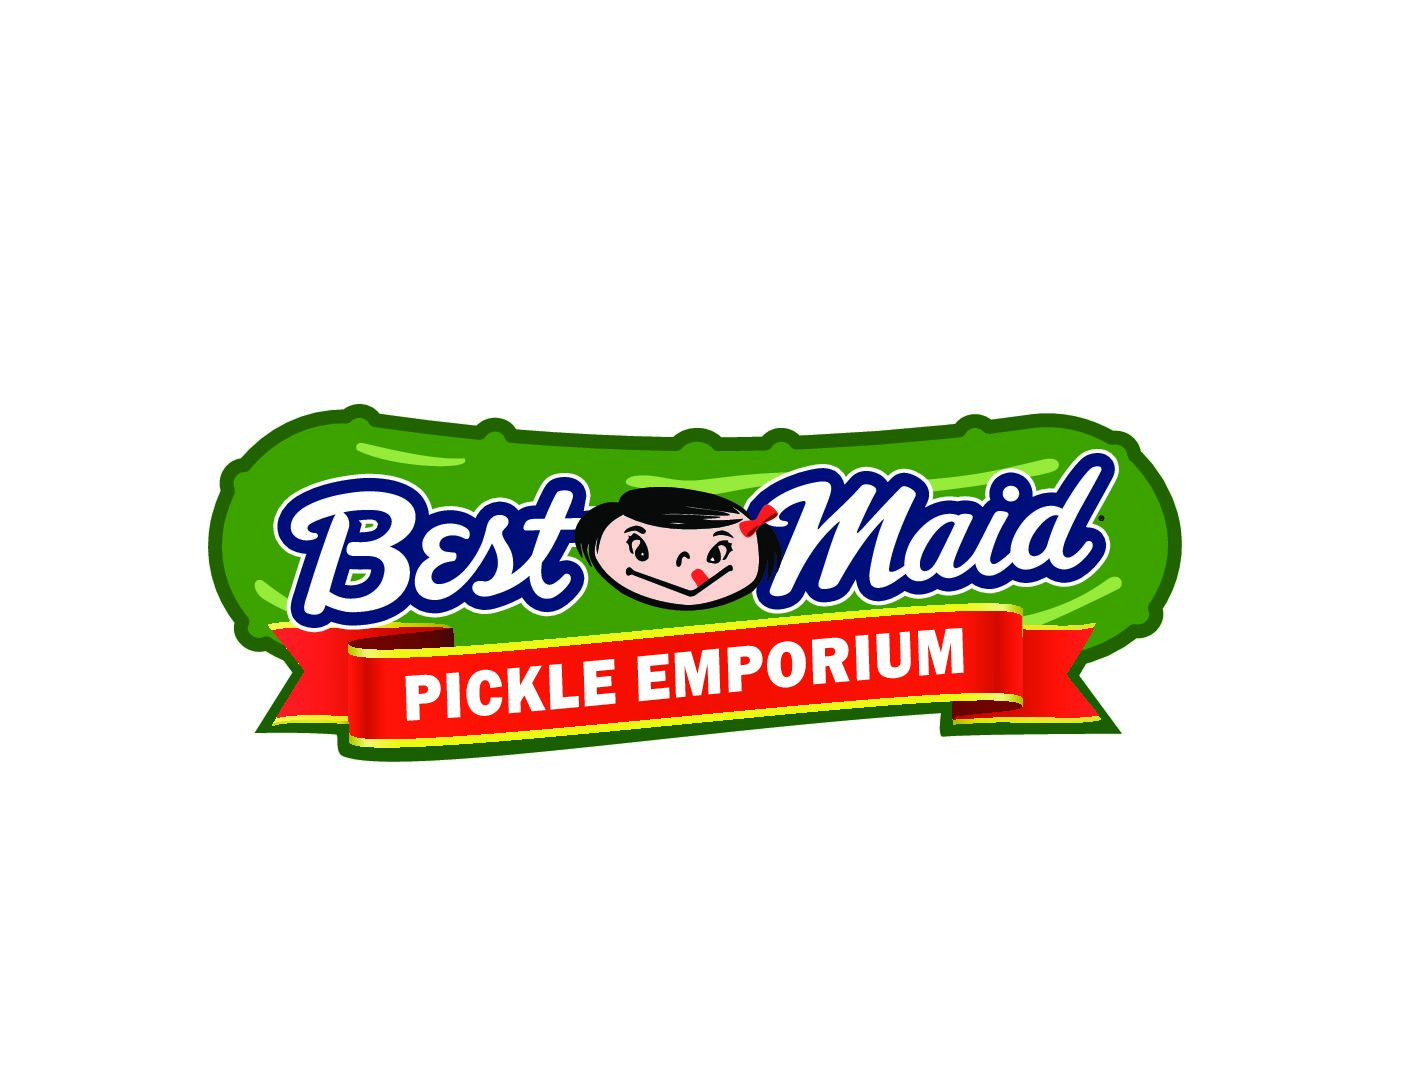 Best-Maid-Pickle-Emporium